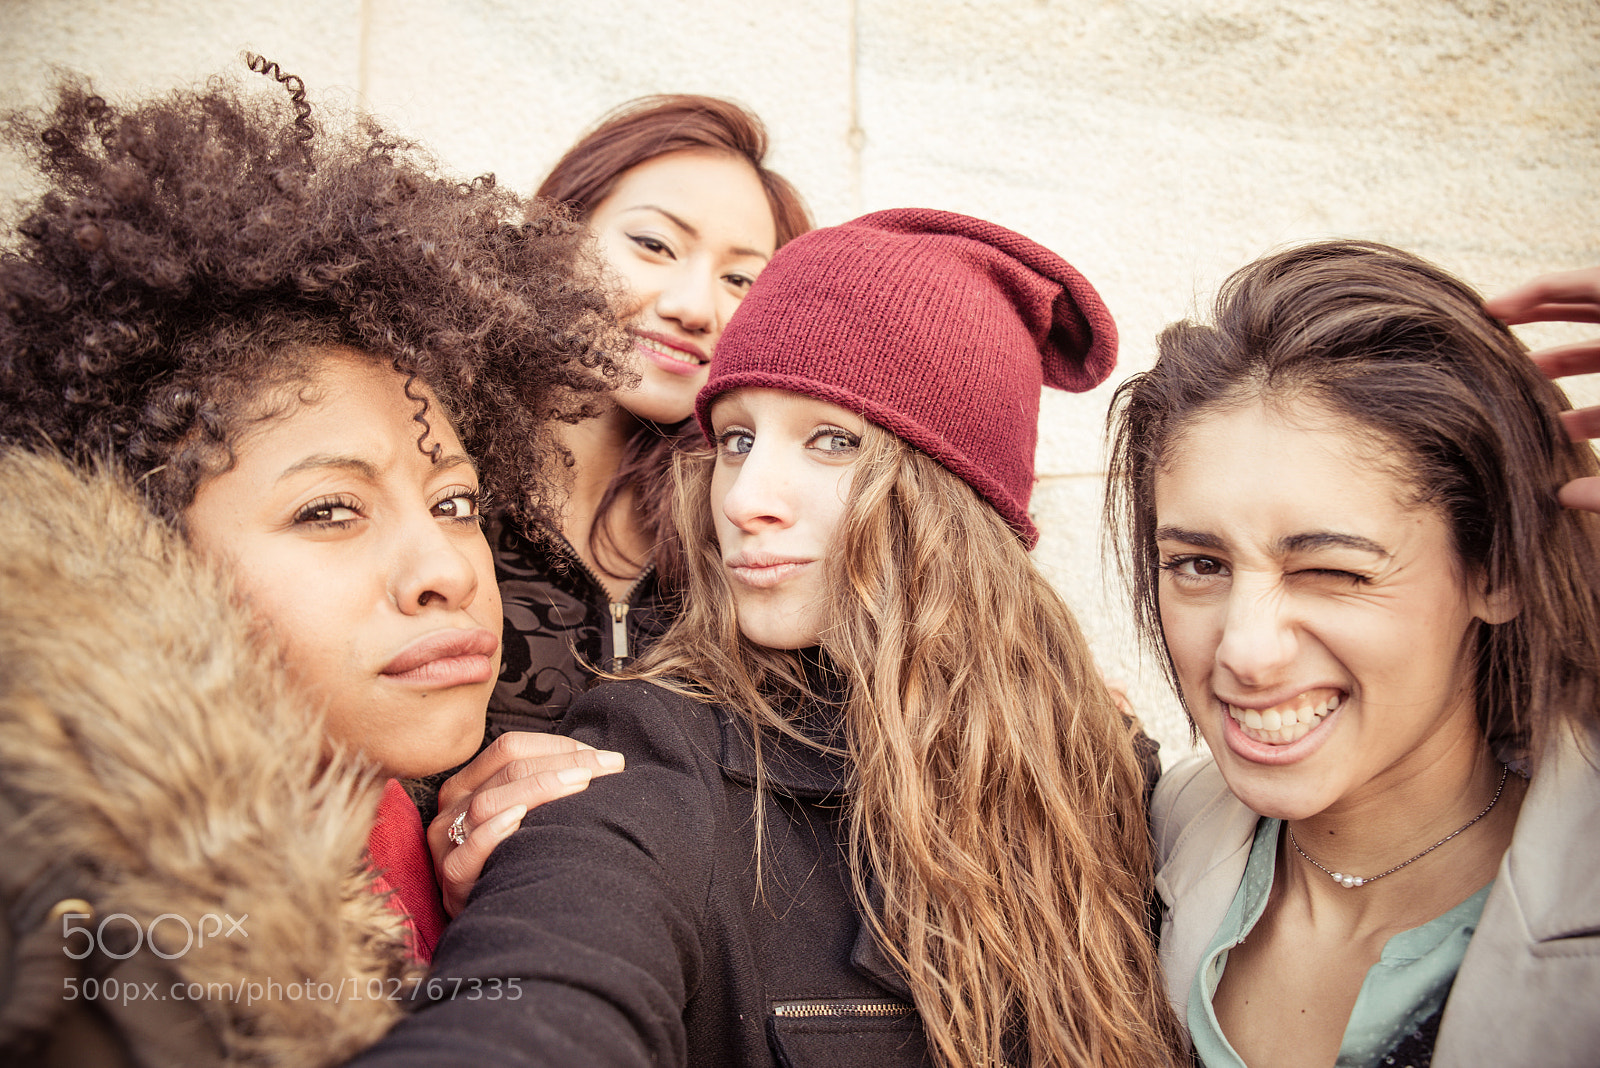 Nikon D610 sample photo. Four young beautiful girls photography